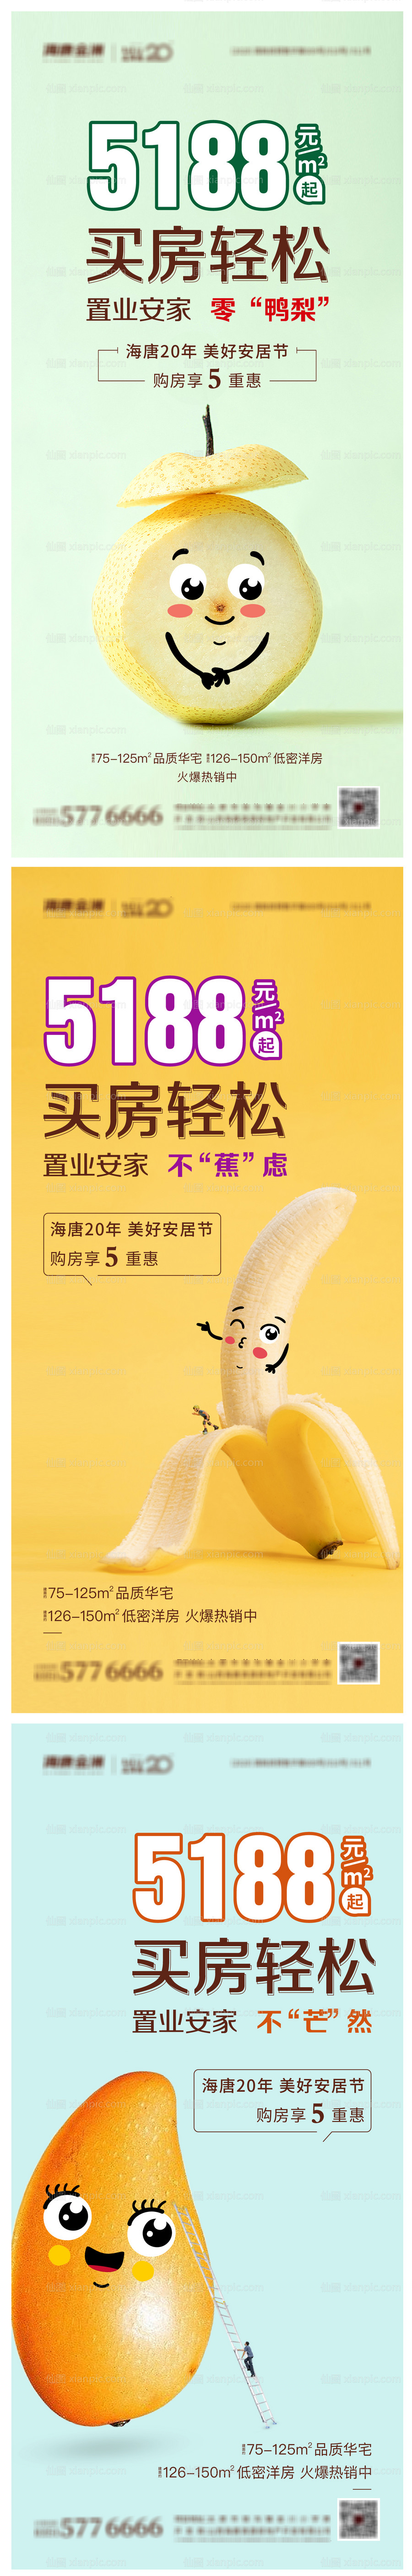 素材乐-地产水果创意系列海报